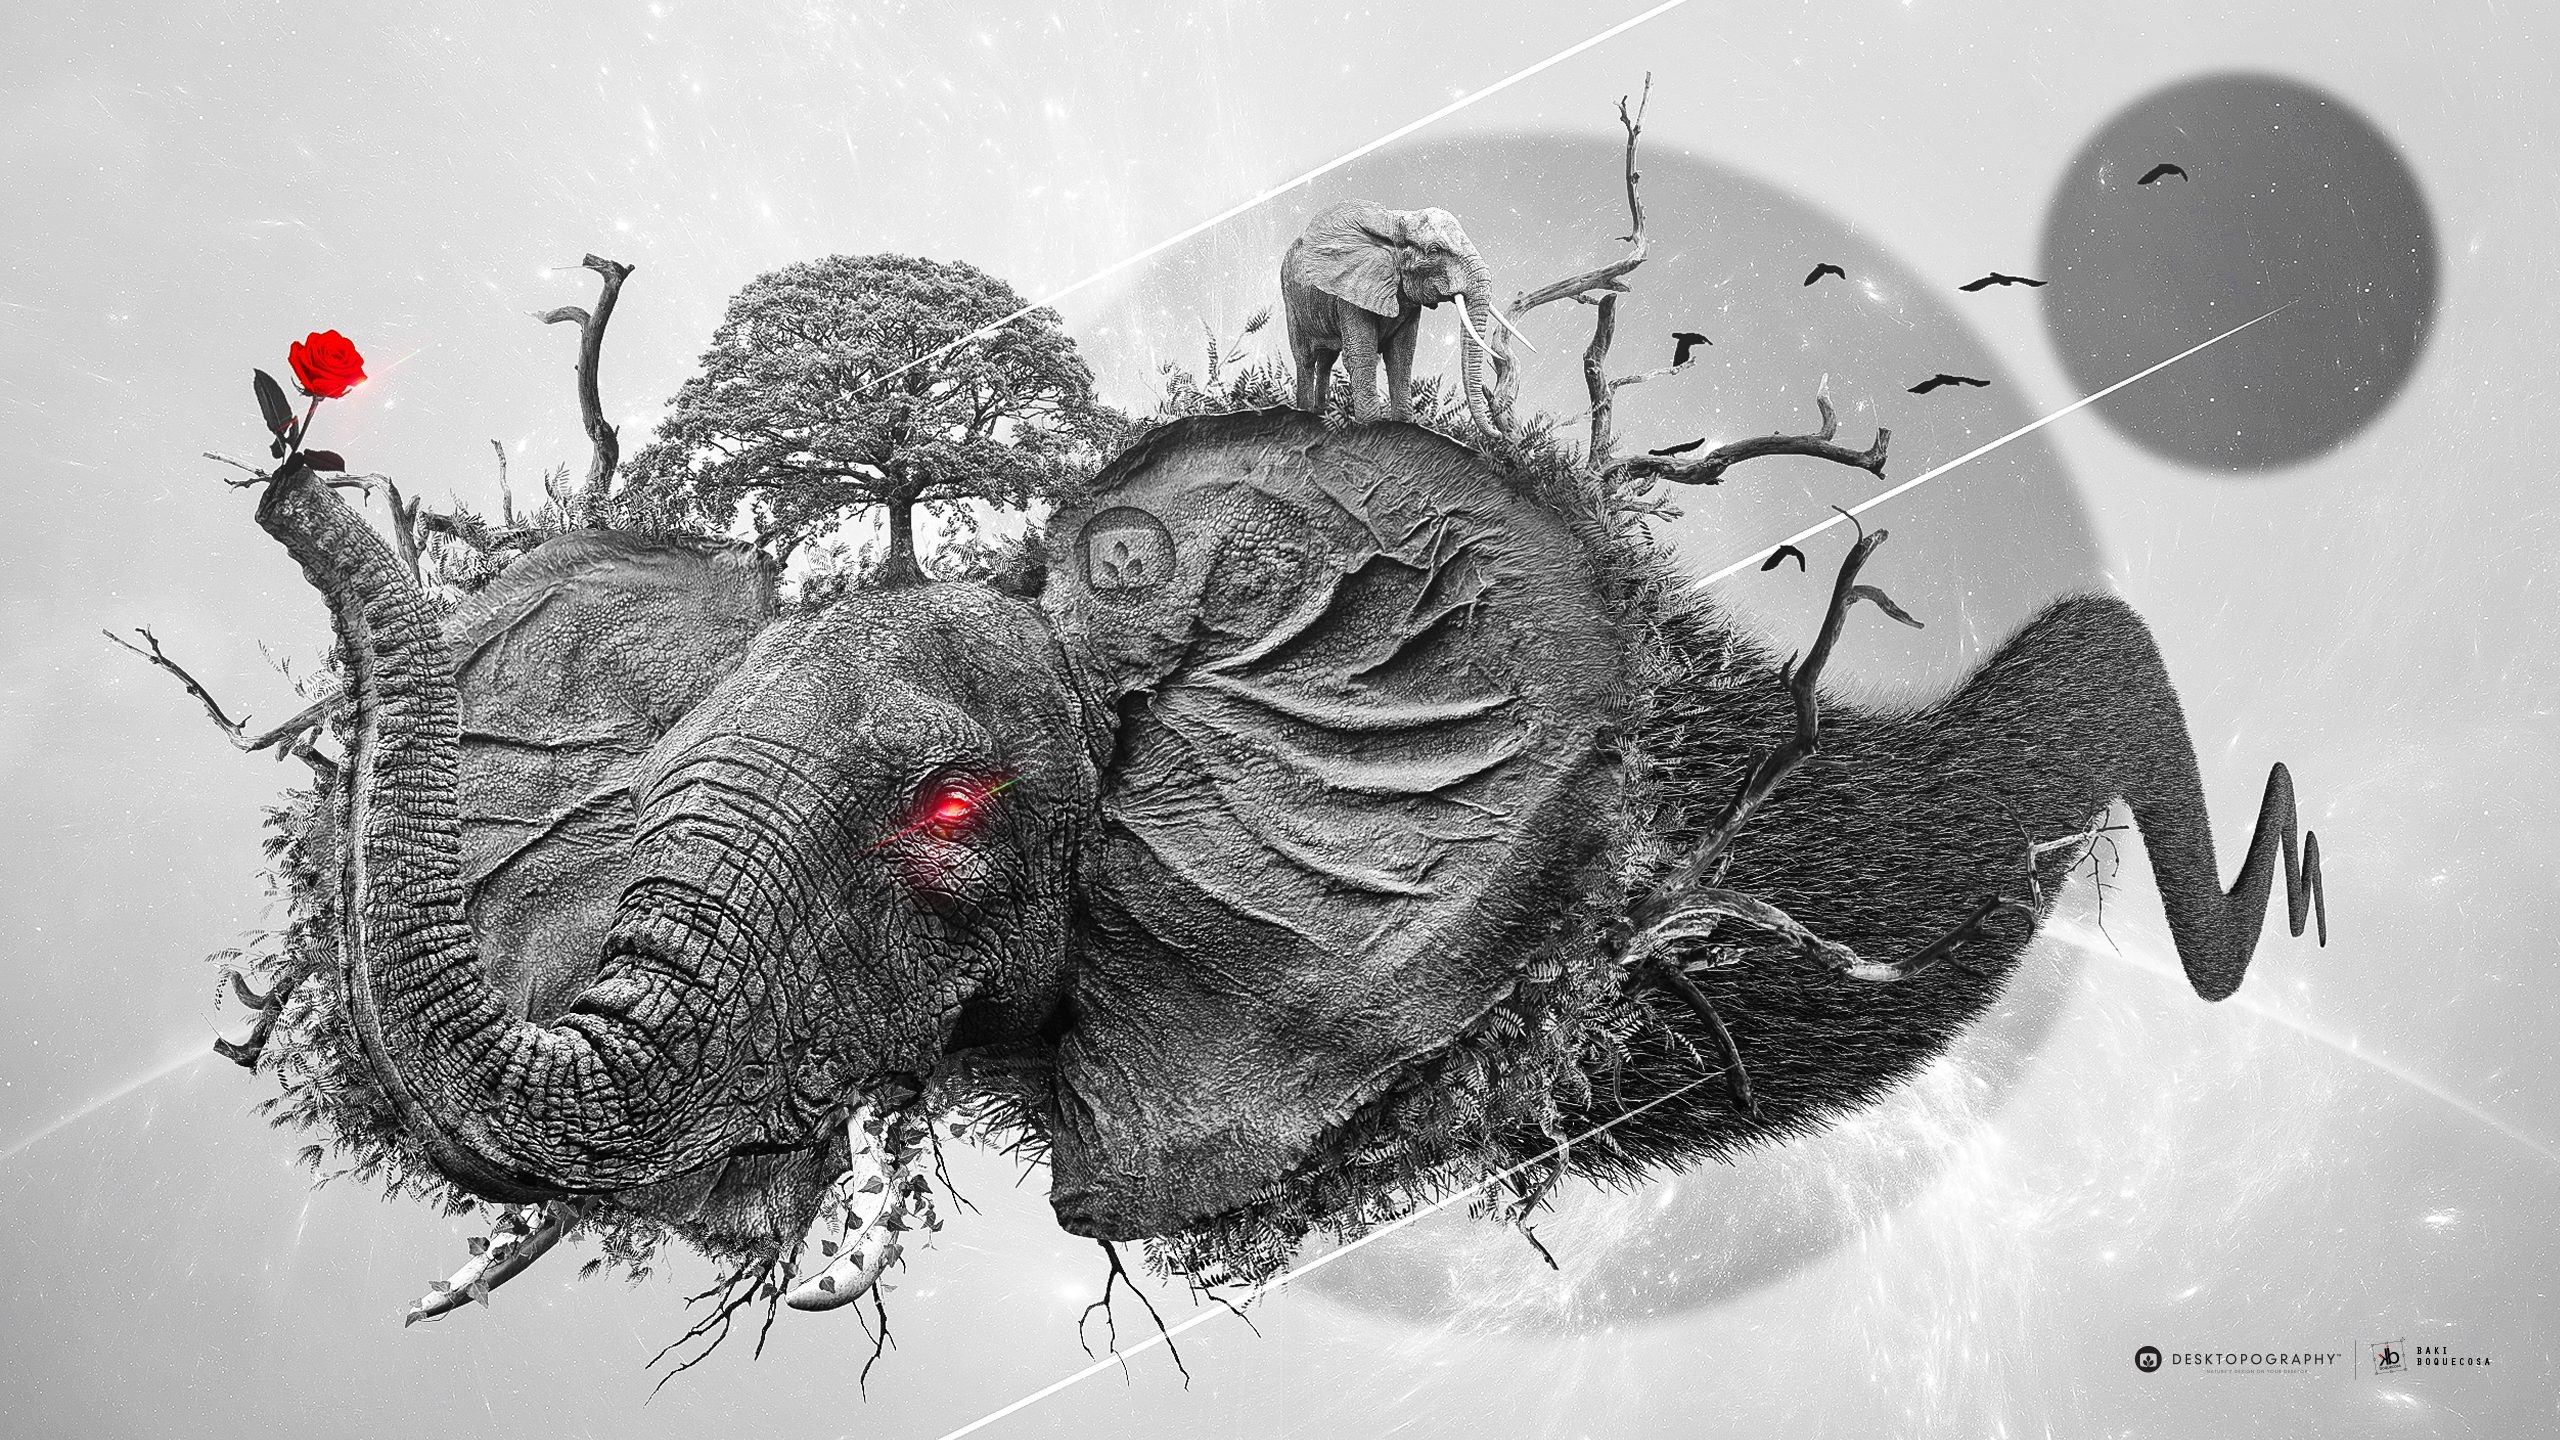 Бесплатное фото Нарисованный слон держит в хоботе красный цветочек